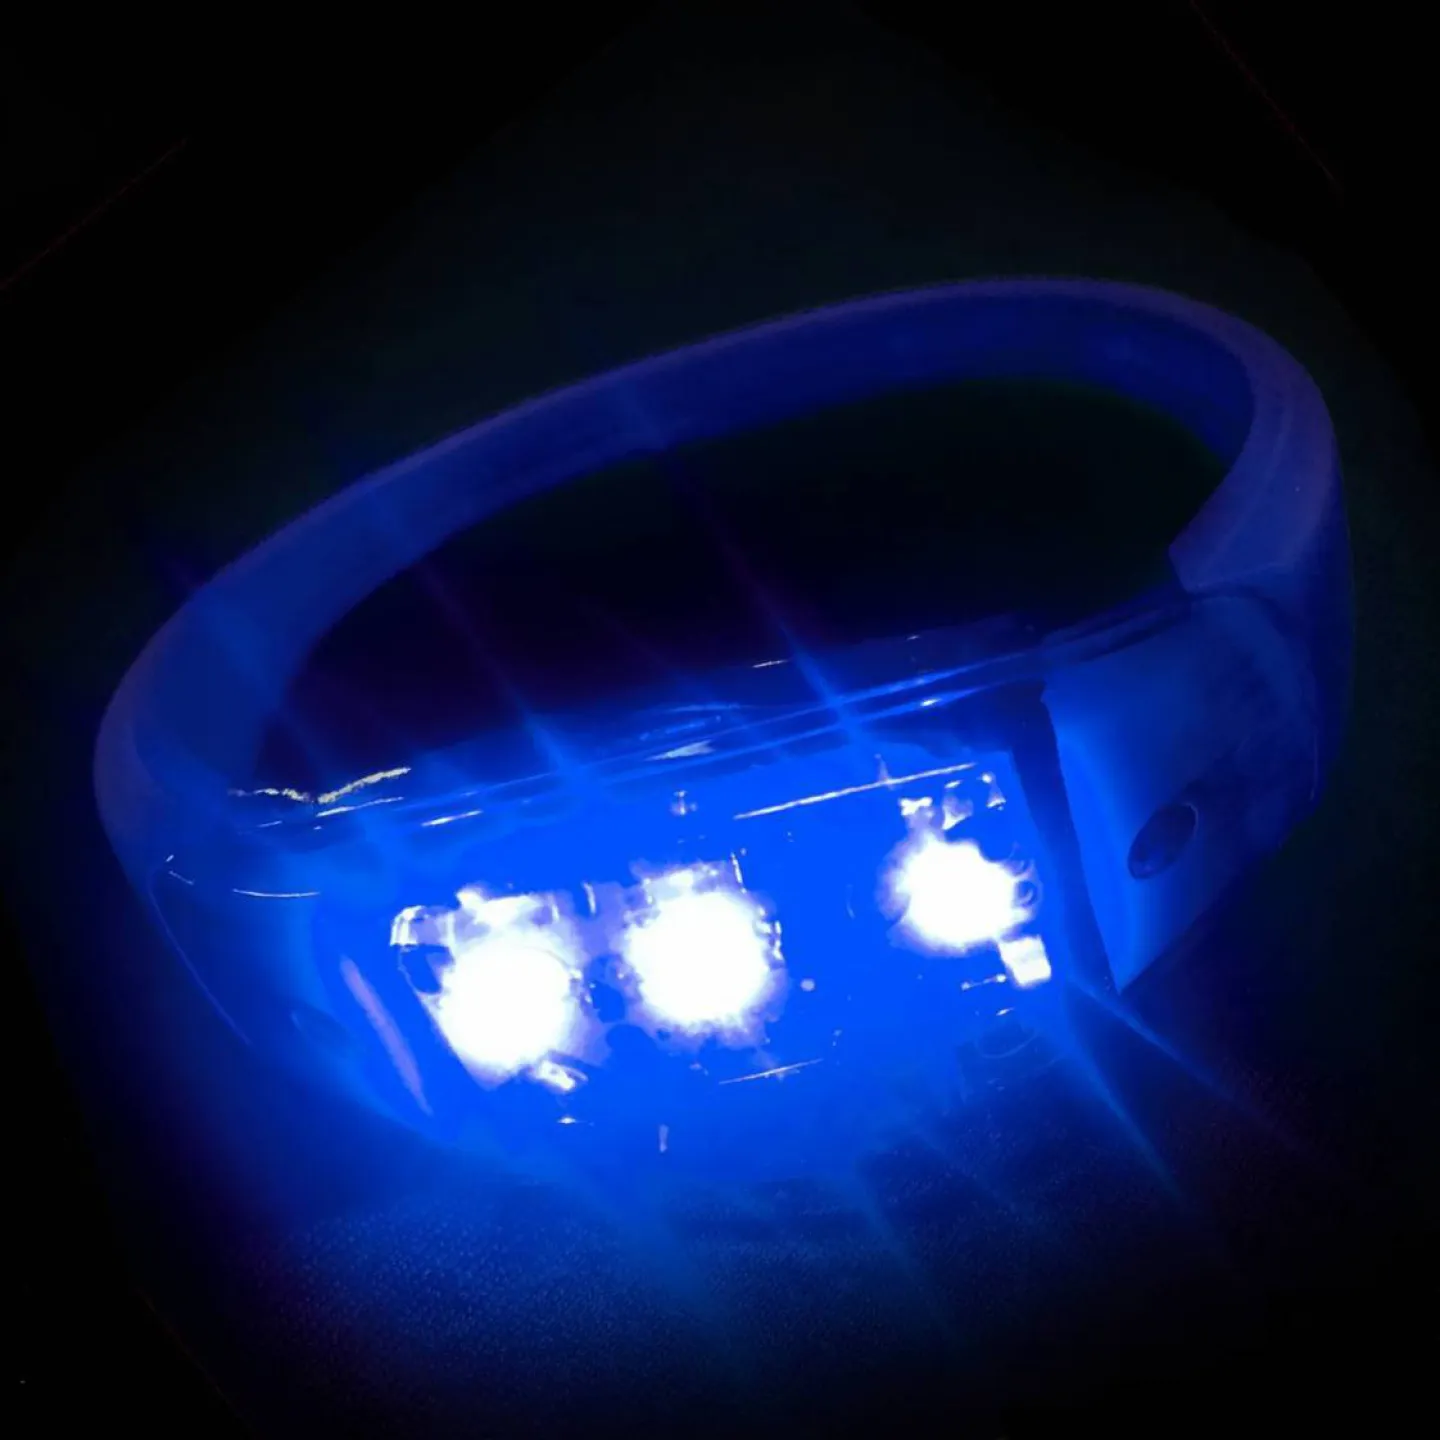 LED armbandjes blauw.